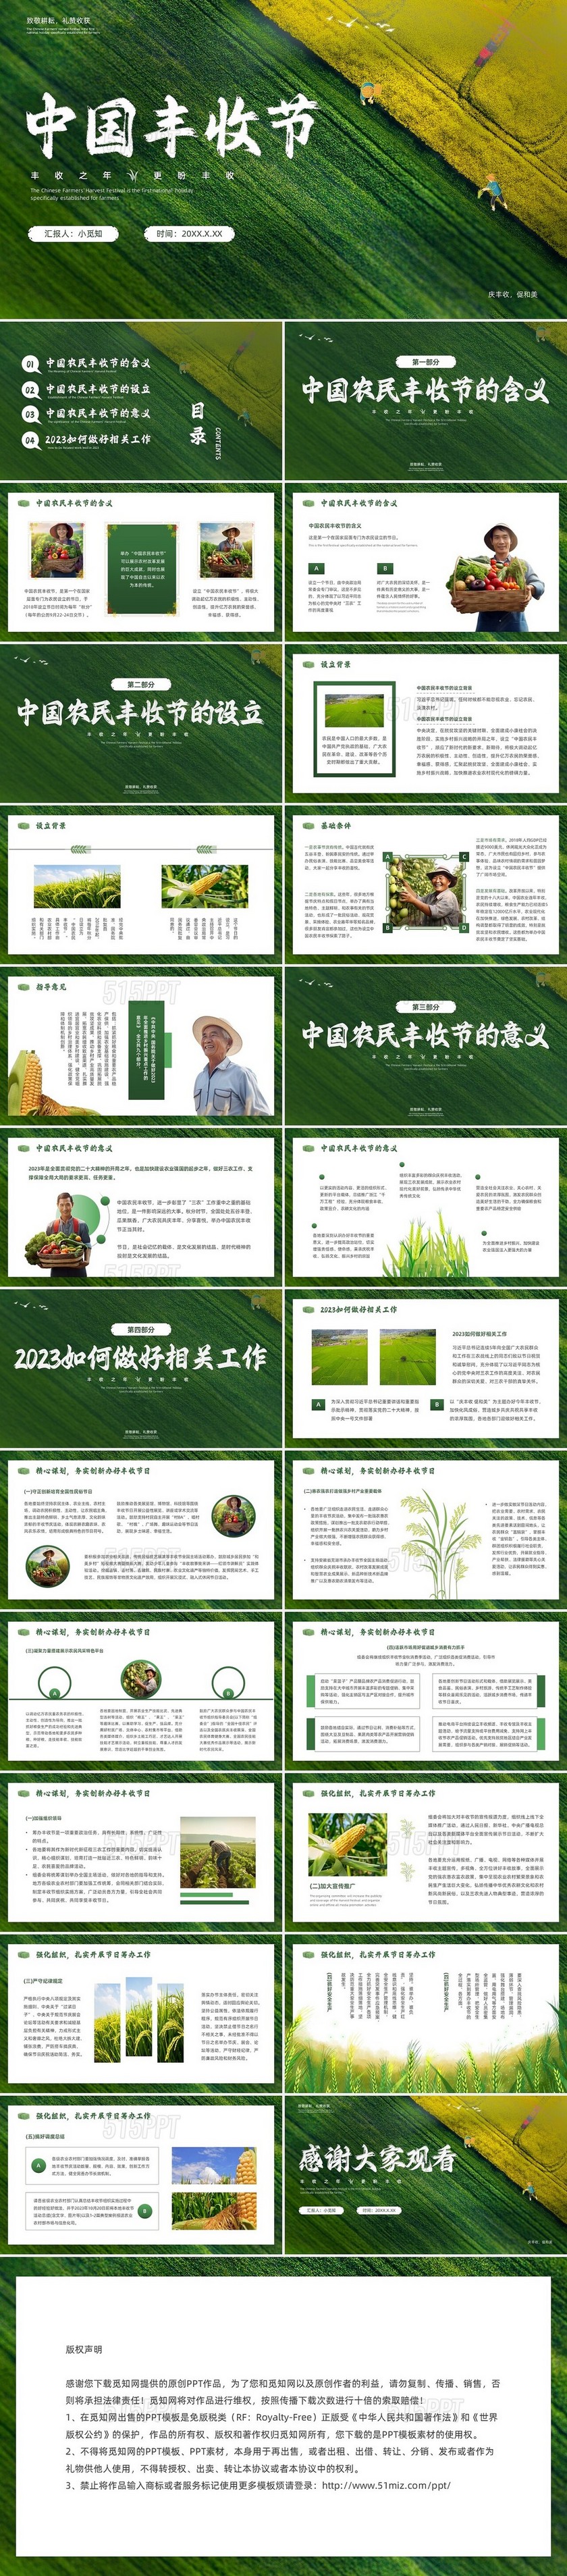 绿色简约插画风中国农民丰收节PPT模板